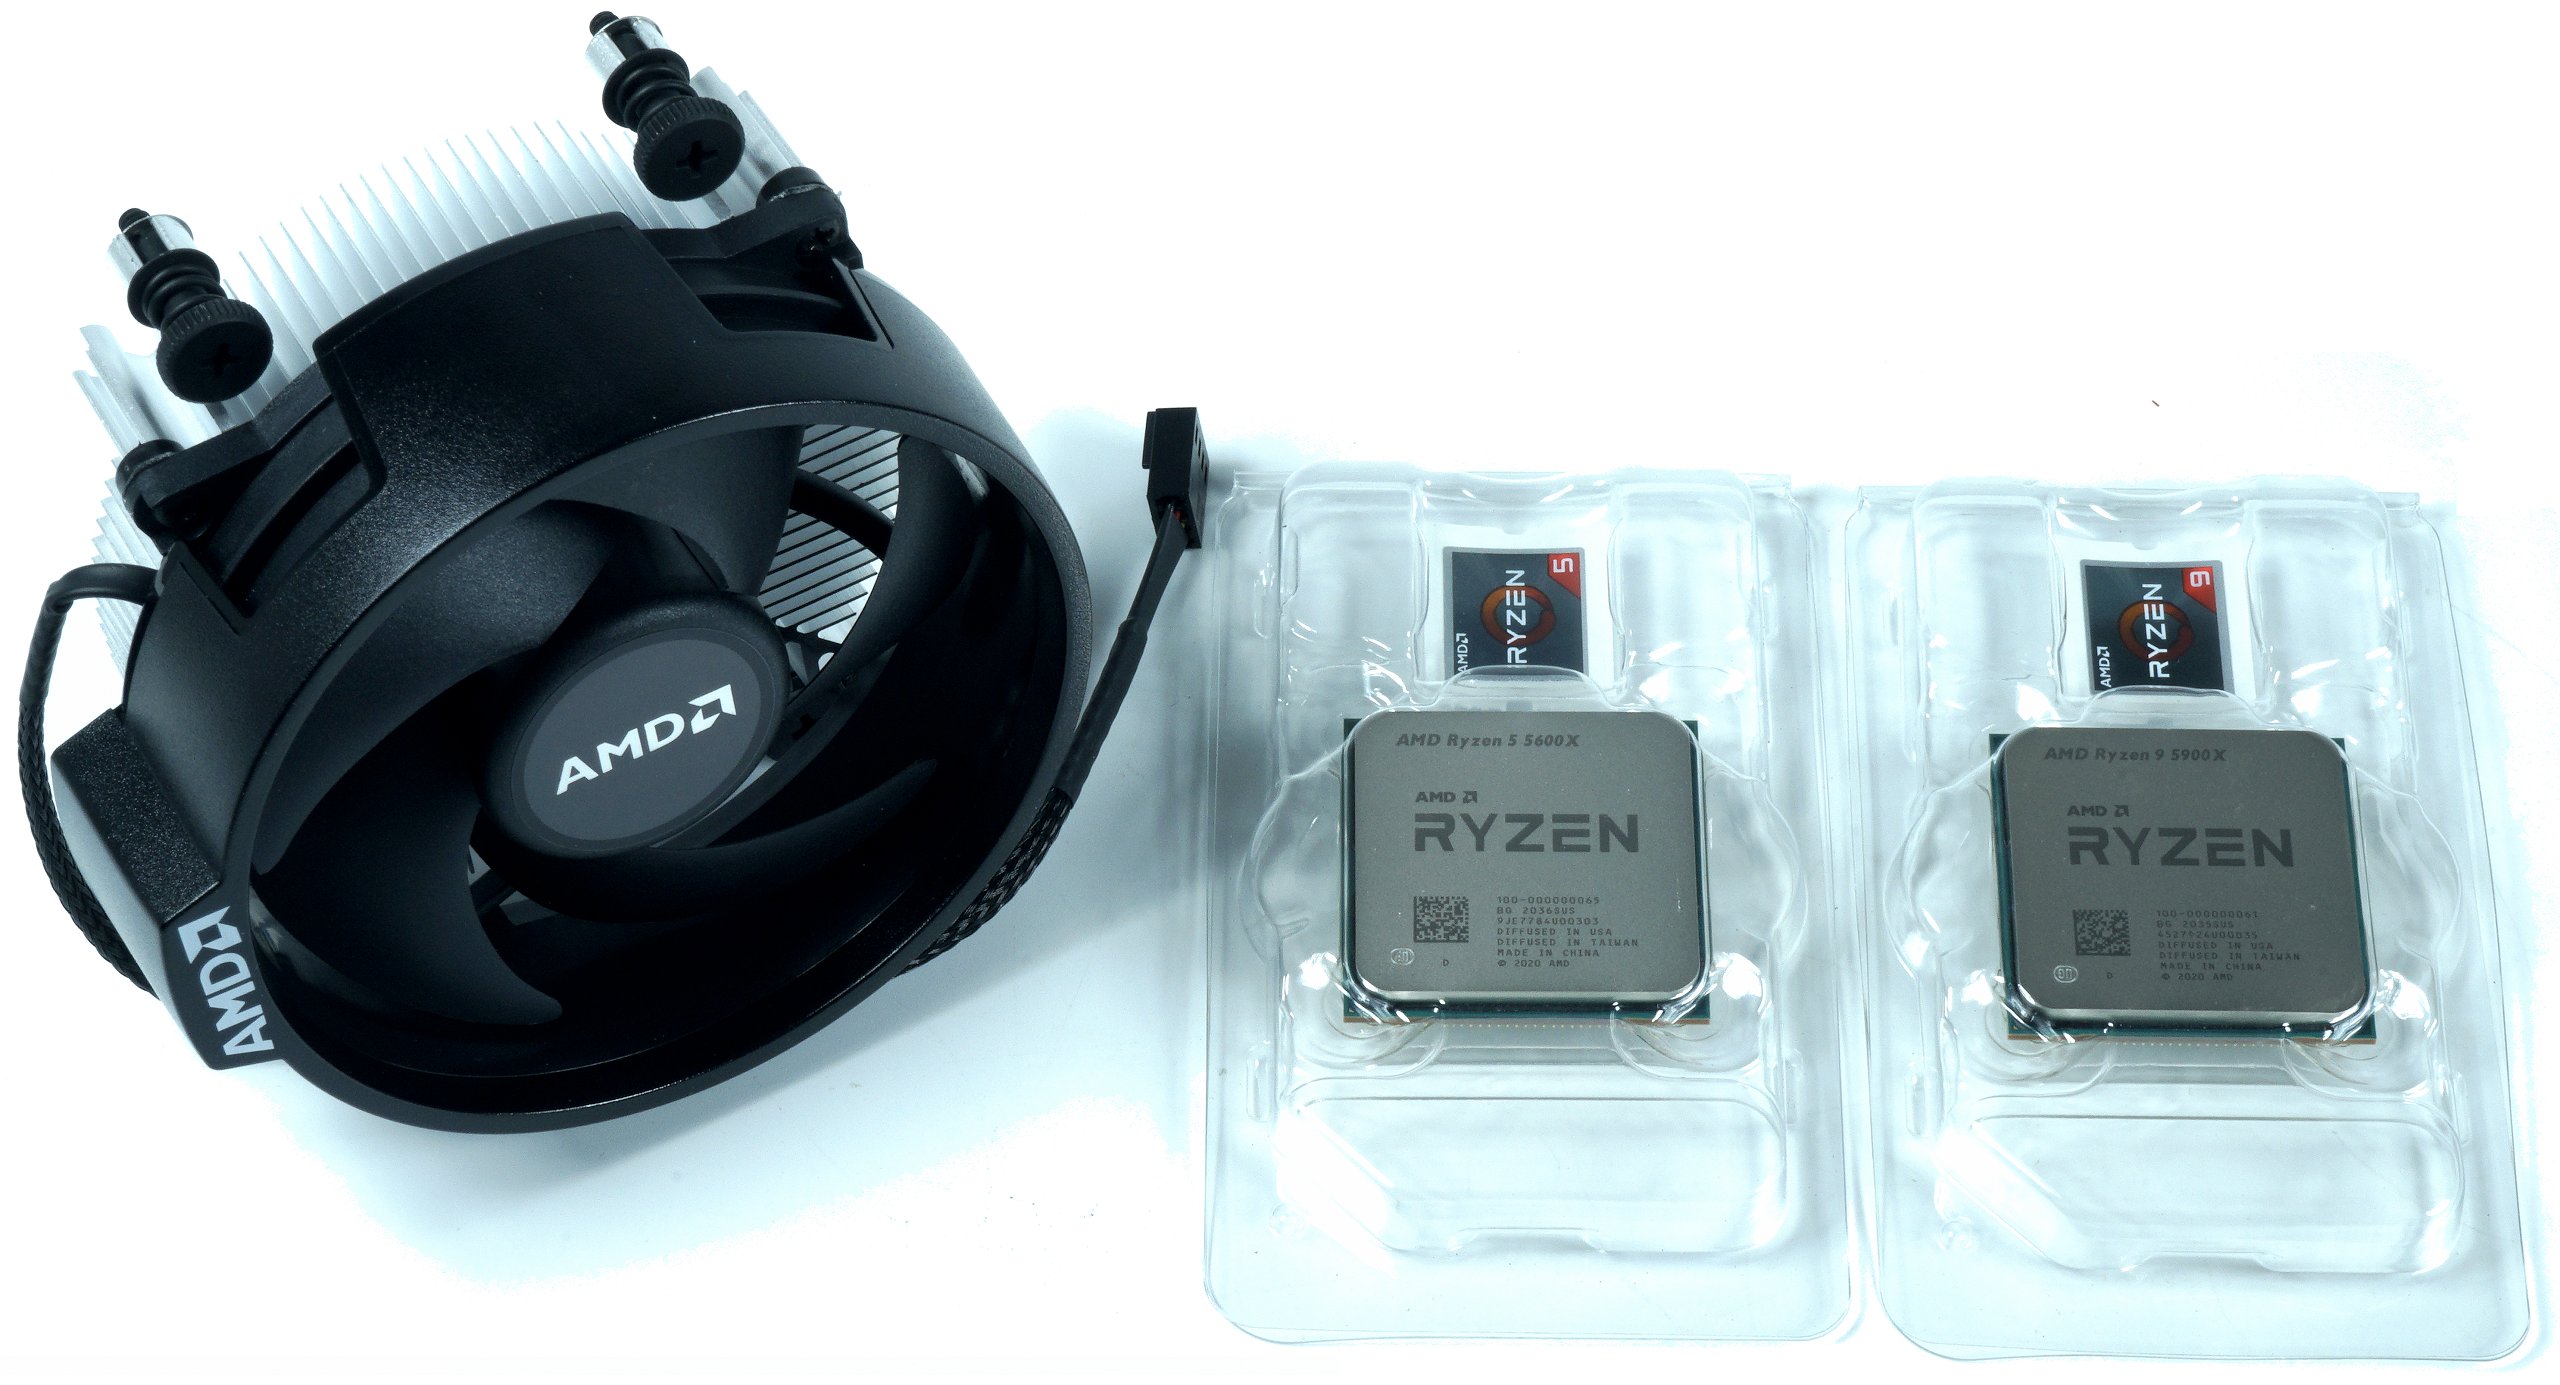 Ryzen - Generation jetzt AMD im igor´sLAB 9 wird obsolet? Intels Ryzen und | ersten 10. Test 5900X 5600X